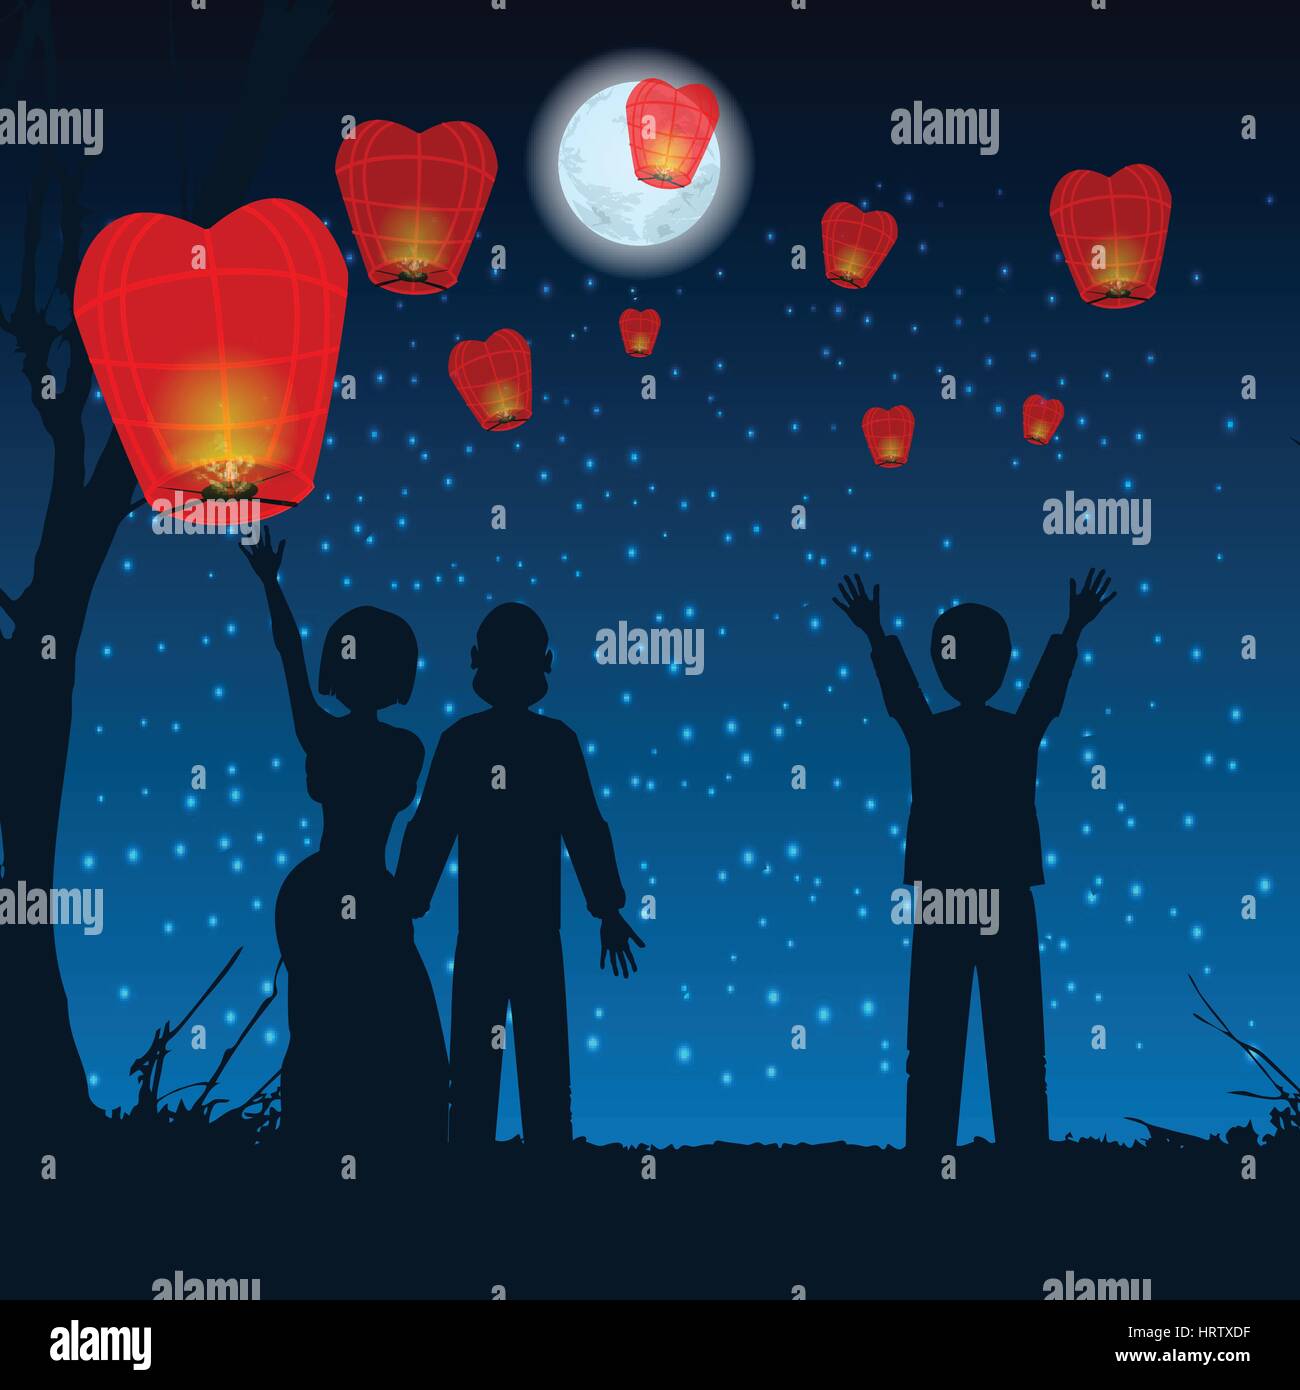 Thailandia, Loy Krathong e Yi Peng Festival, vettore thai aria calda balloonlet persone silhouette sky lanterne in cielo sulla collina. illustrazione. Utilizzare Illustrazione Vettoriale